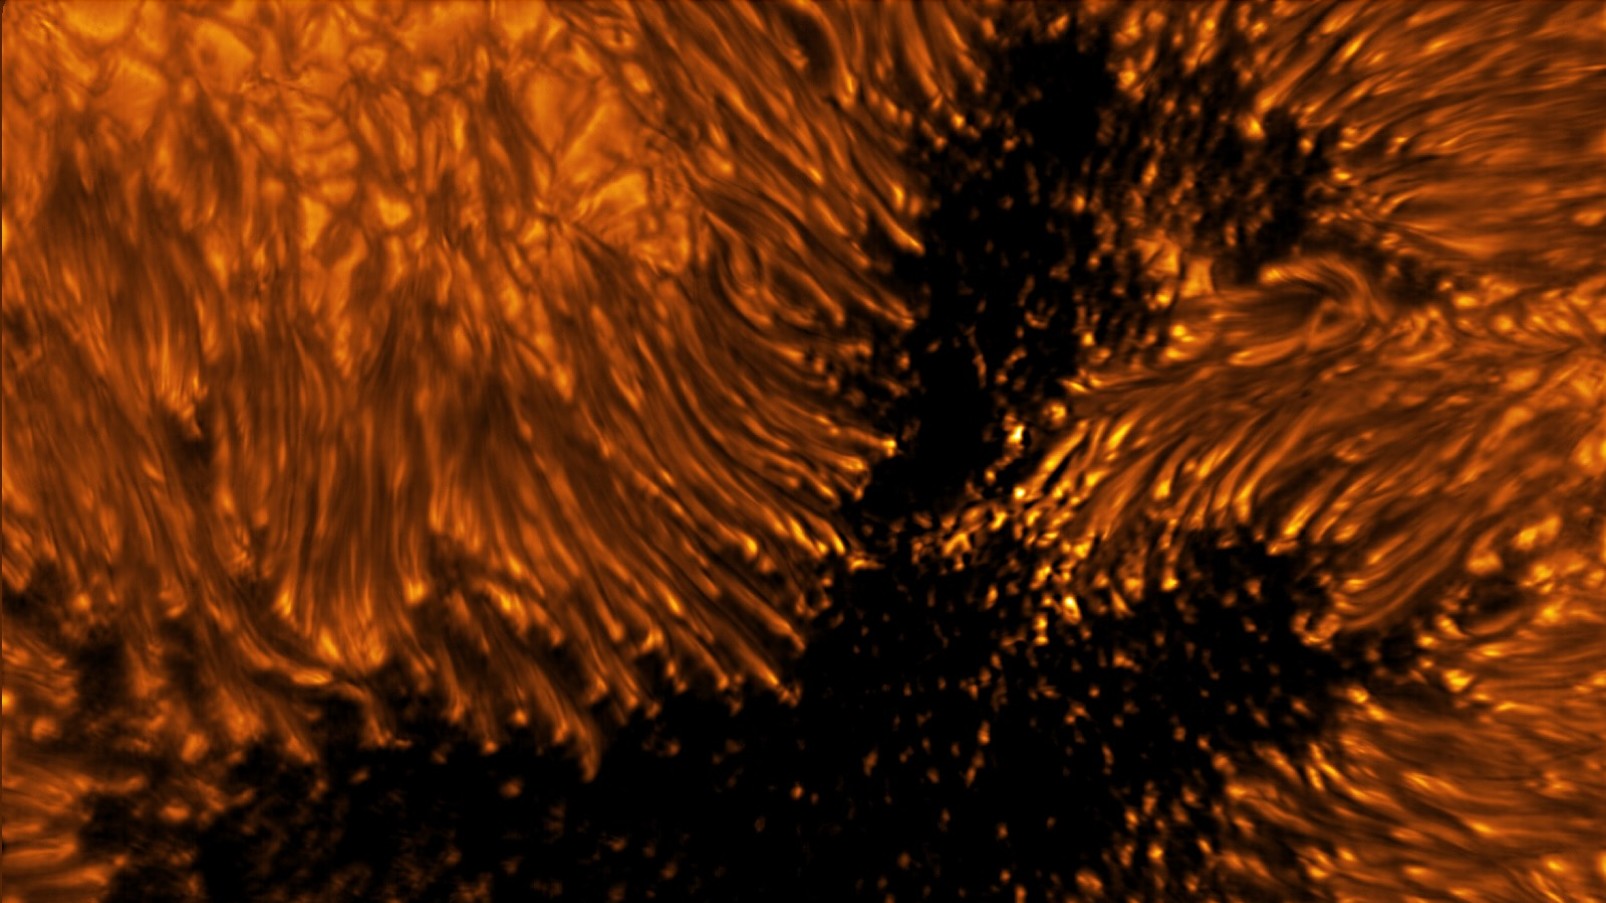 从世界上最大的丹尼尔·井上太阳望远镜中看到惊人的新太阳照片